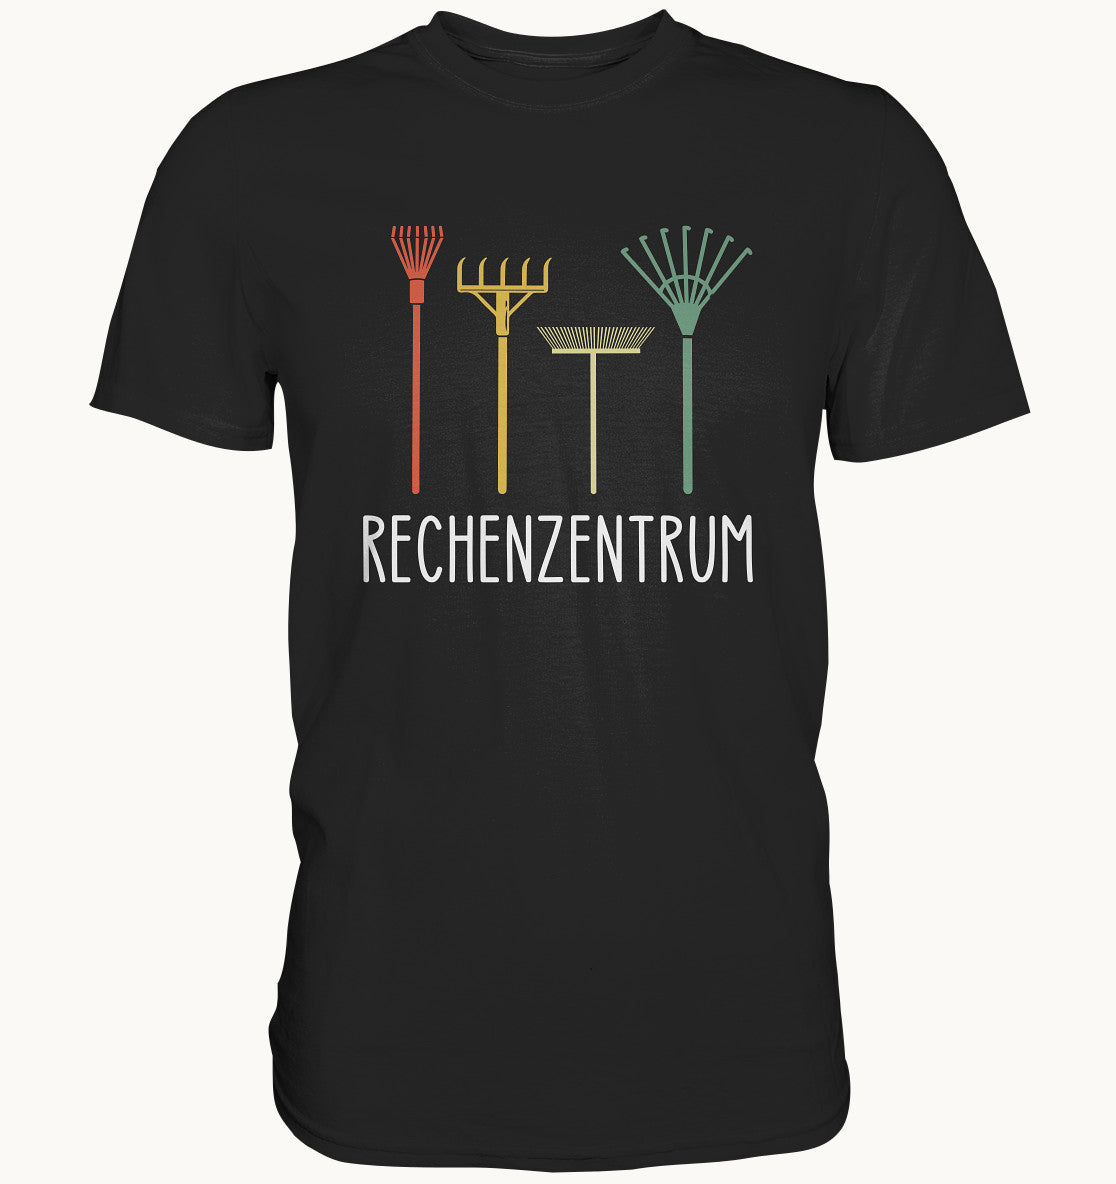 Rechenzentrum - Premium Shirt – Baufun Shop